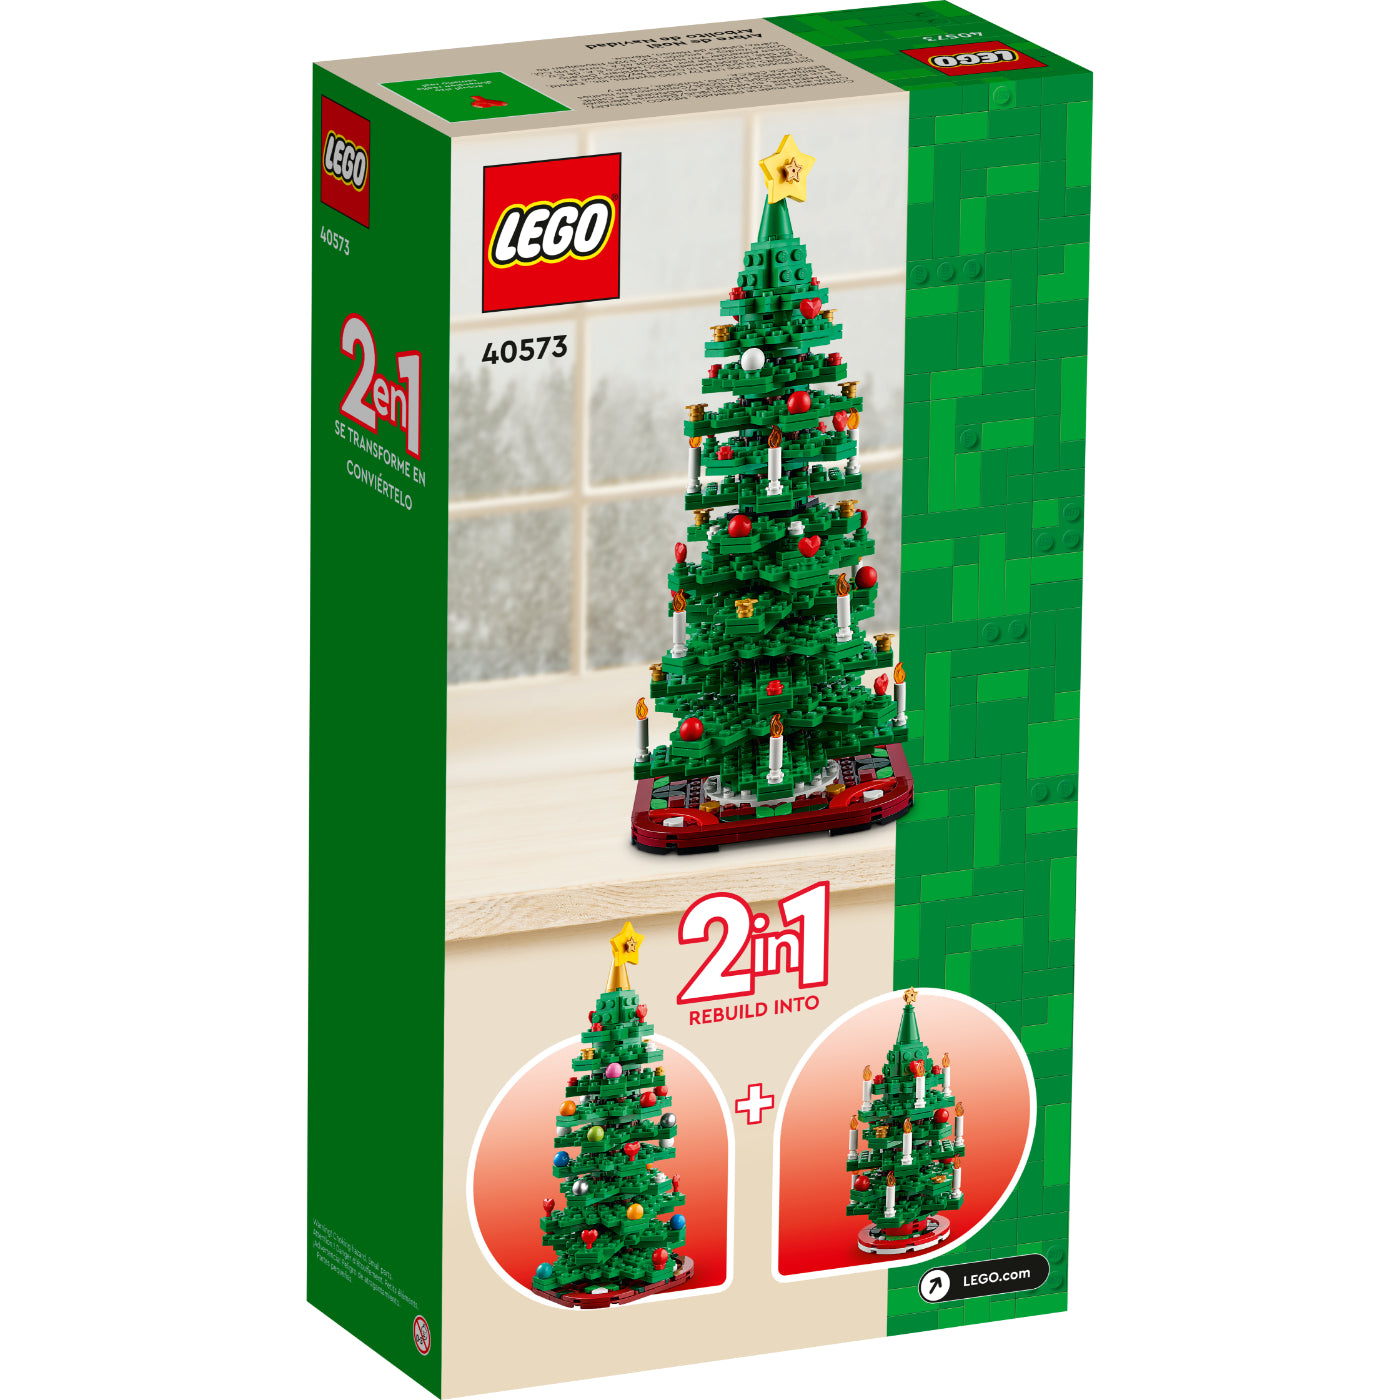 LEGO®: Arbolito de Navidad (40573)